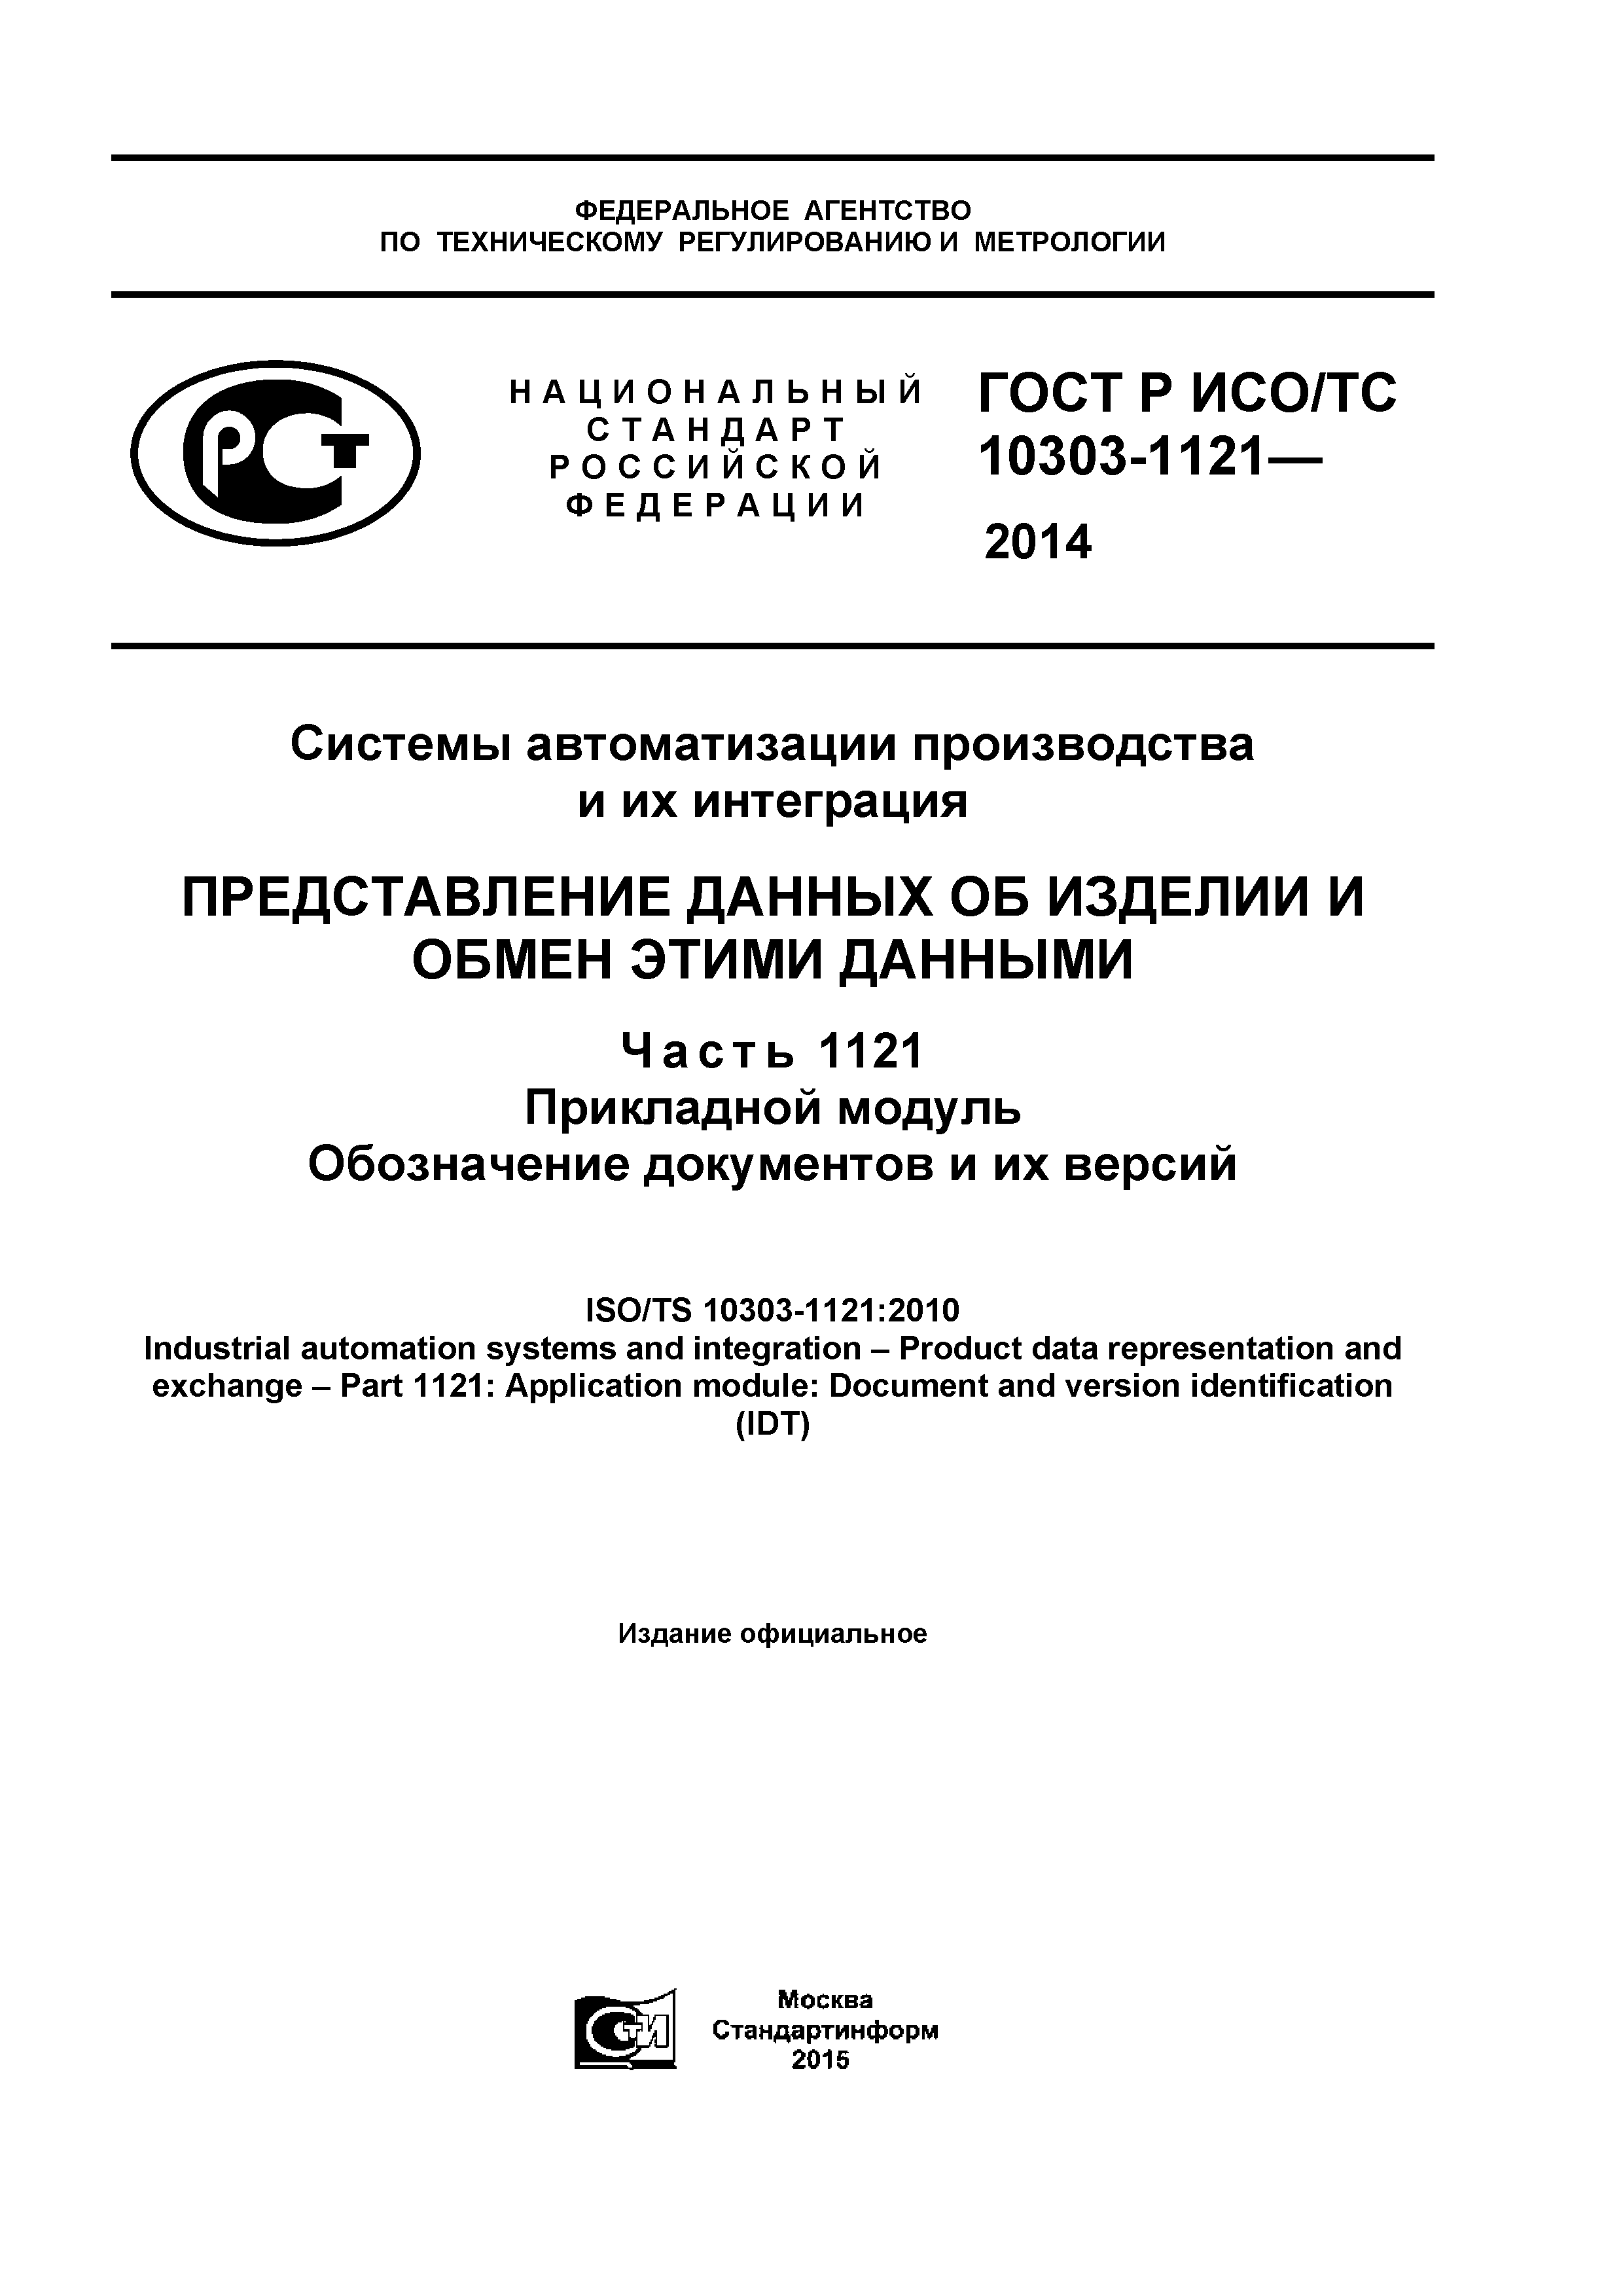 ГОСТ Р ИСО/ТС 10303-1121-2014